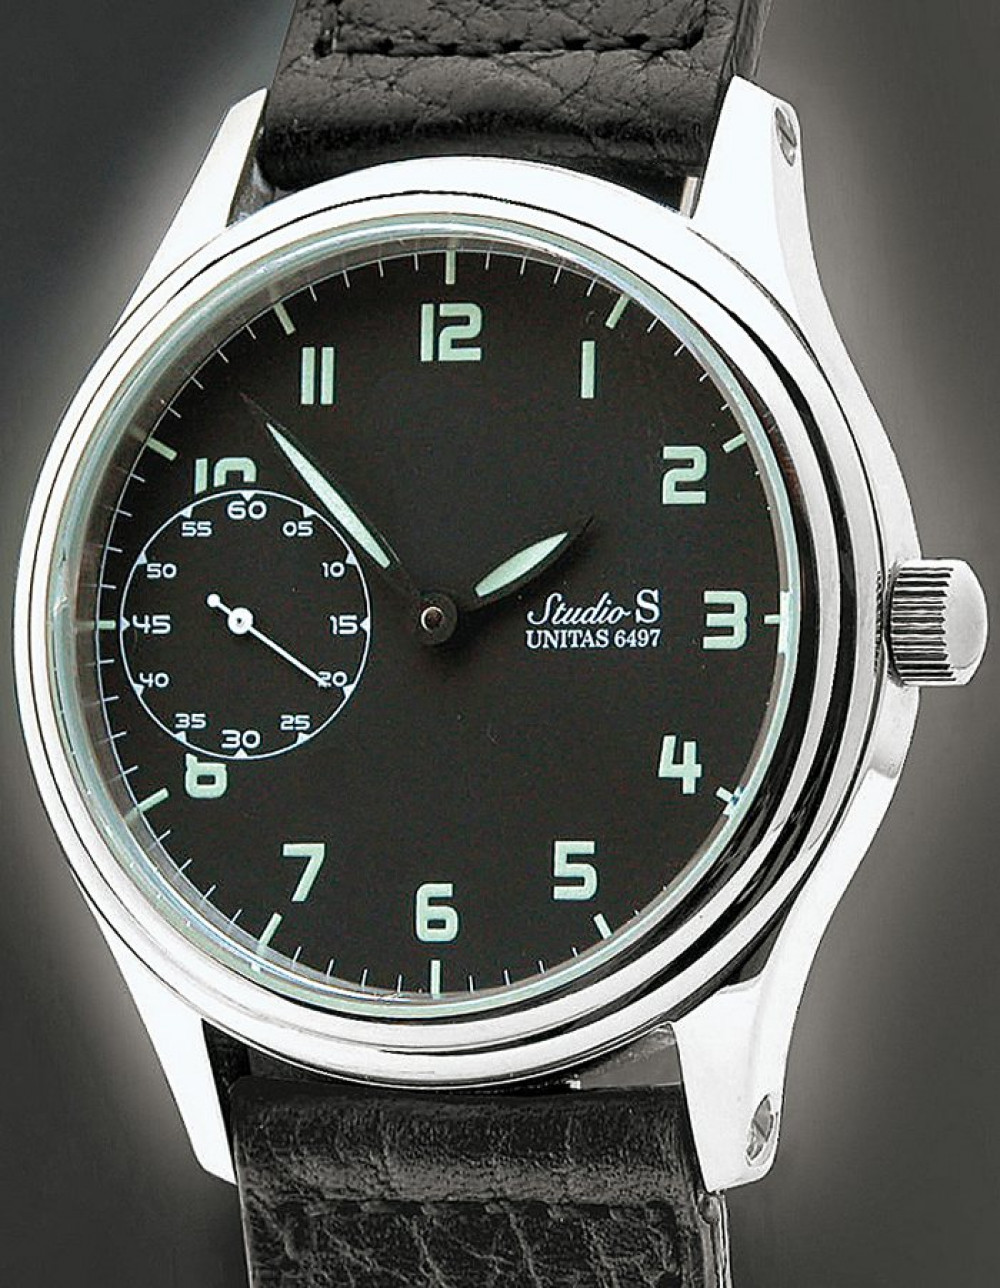 Zegarek firmy MSC M. Schneider & Co., model Studio S >S2<